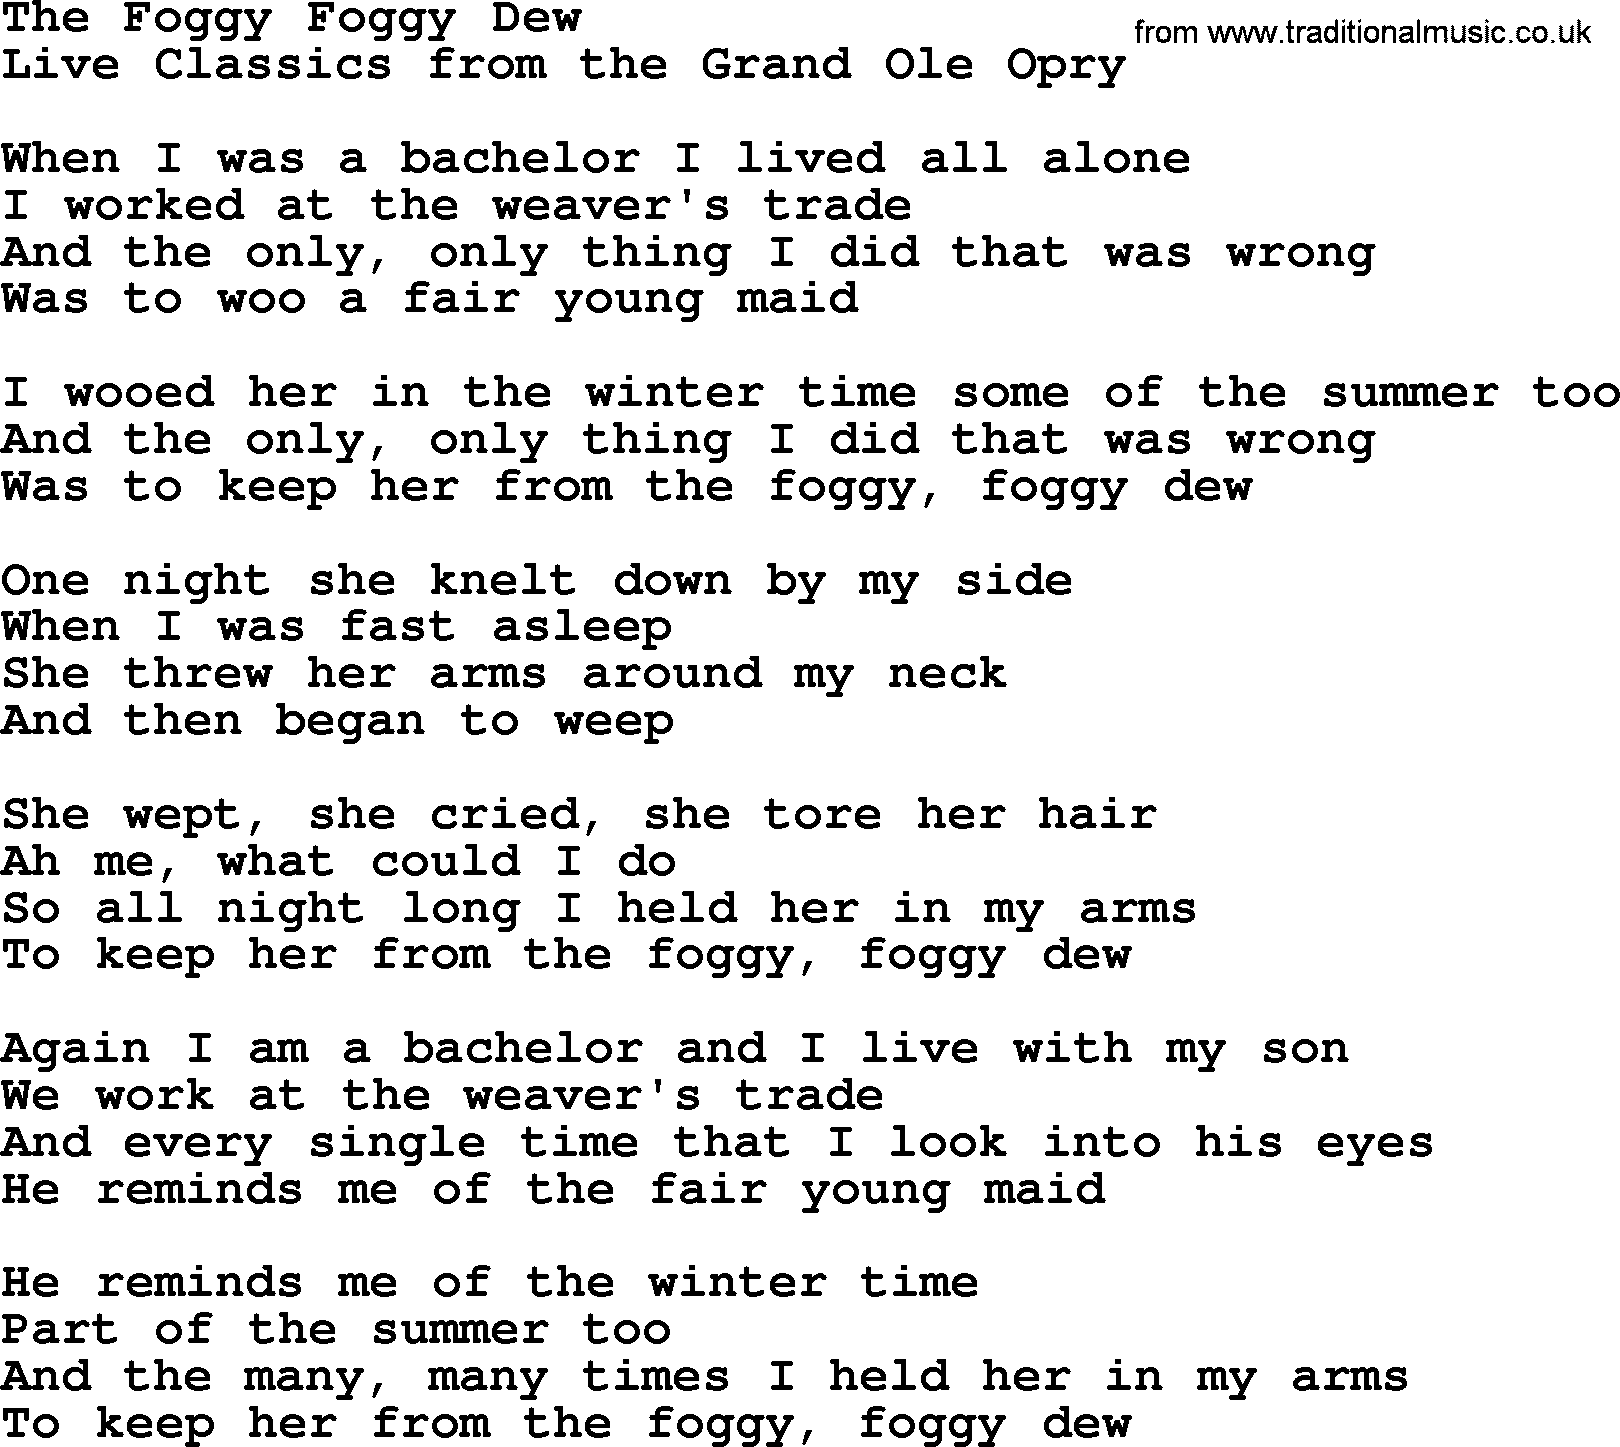 Marty Robbins song: The Foggy Foggy Dew, lyrics